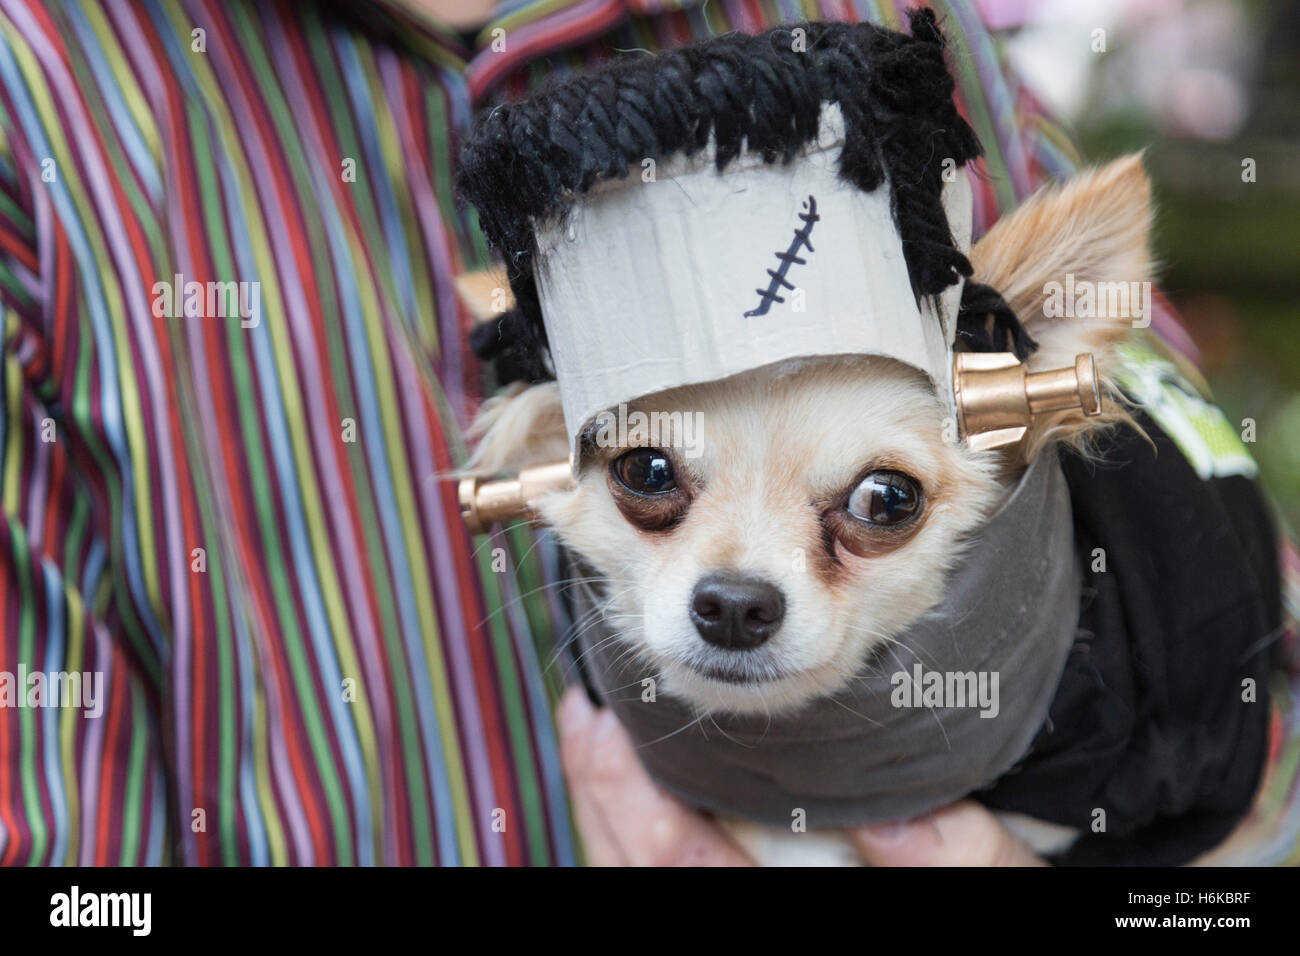 Image result for frankenstein dog costume